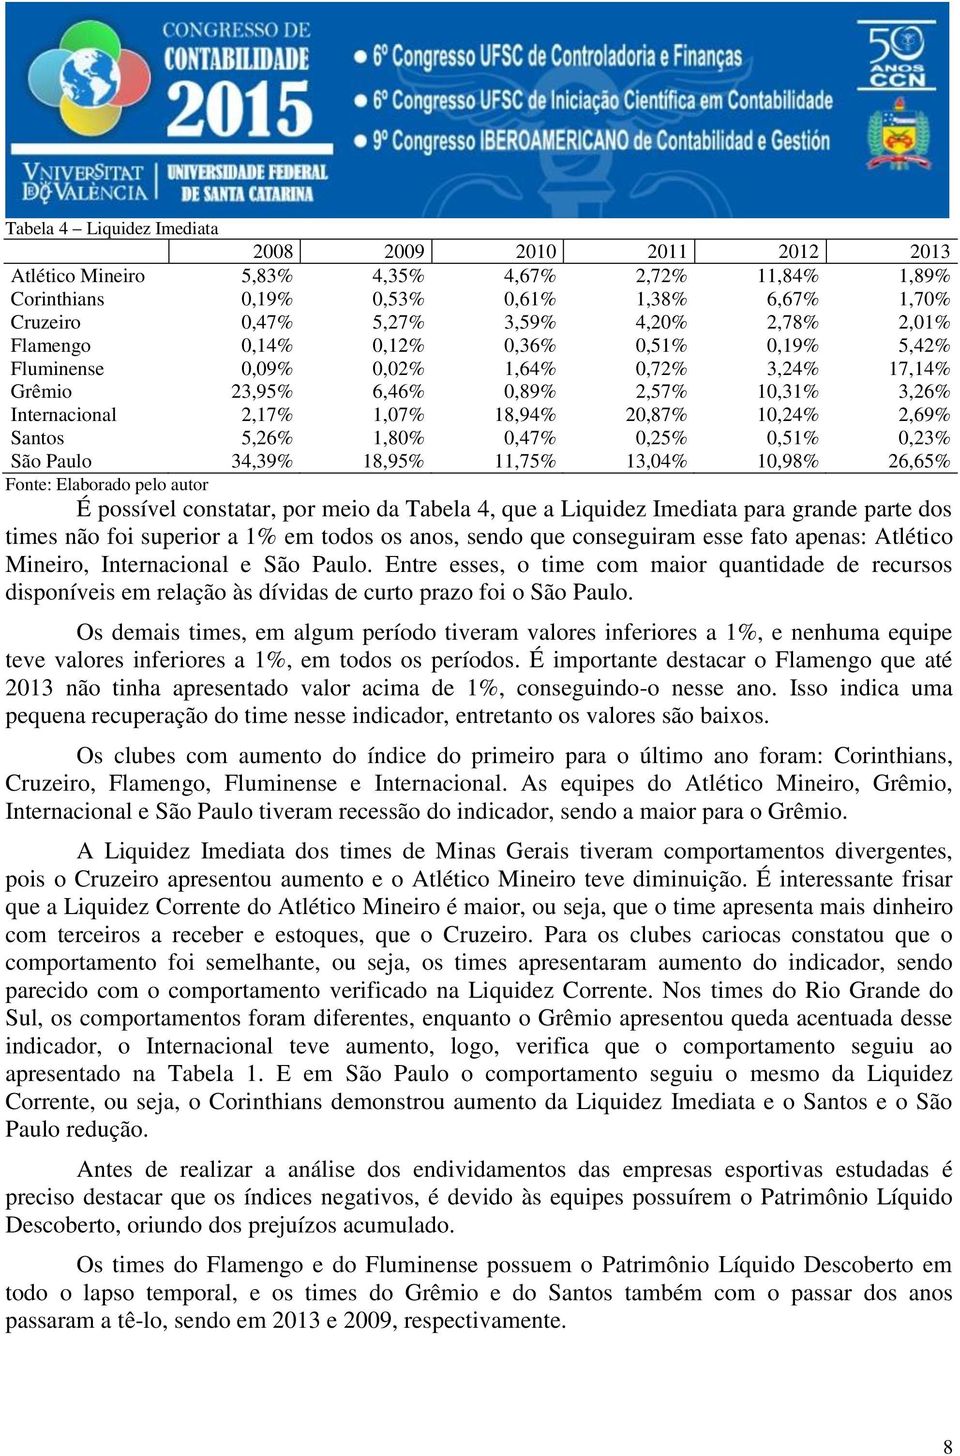 0,25% 0,51% 0,23% São Paulo 34,39% 18,95% 11,75% 13,04% 10,98% 26,65% É possível constatar, por meio da Tabela 4, que a Liquidez Imediata para grande parte dos times não foi superior a 1% em todos os